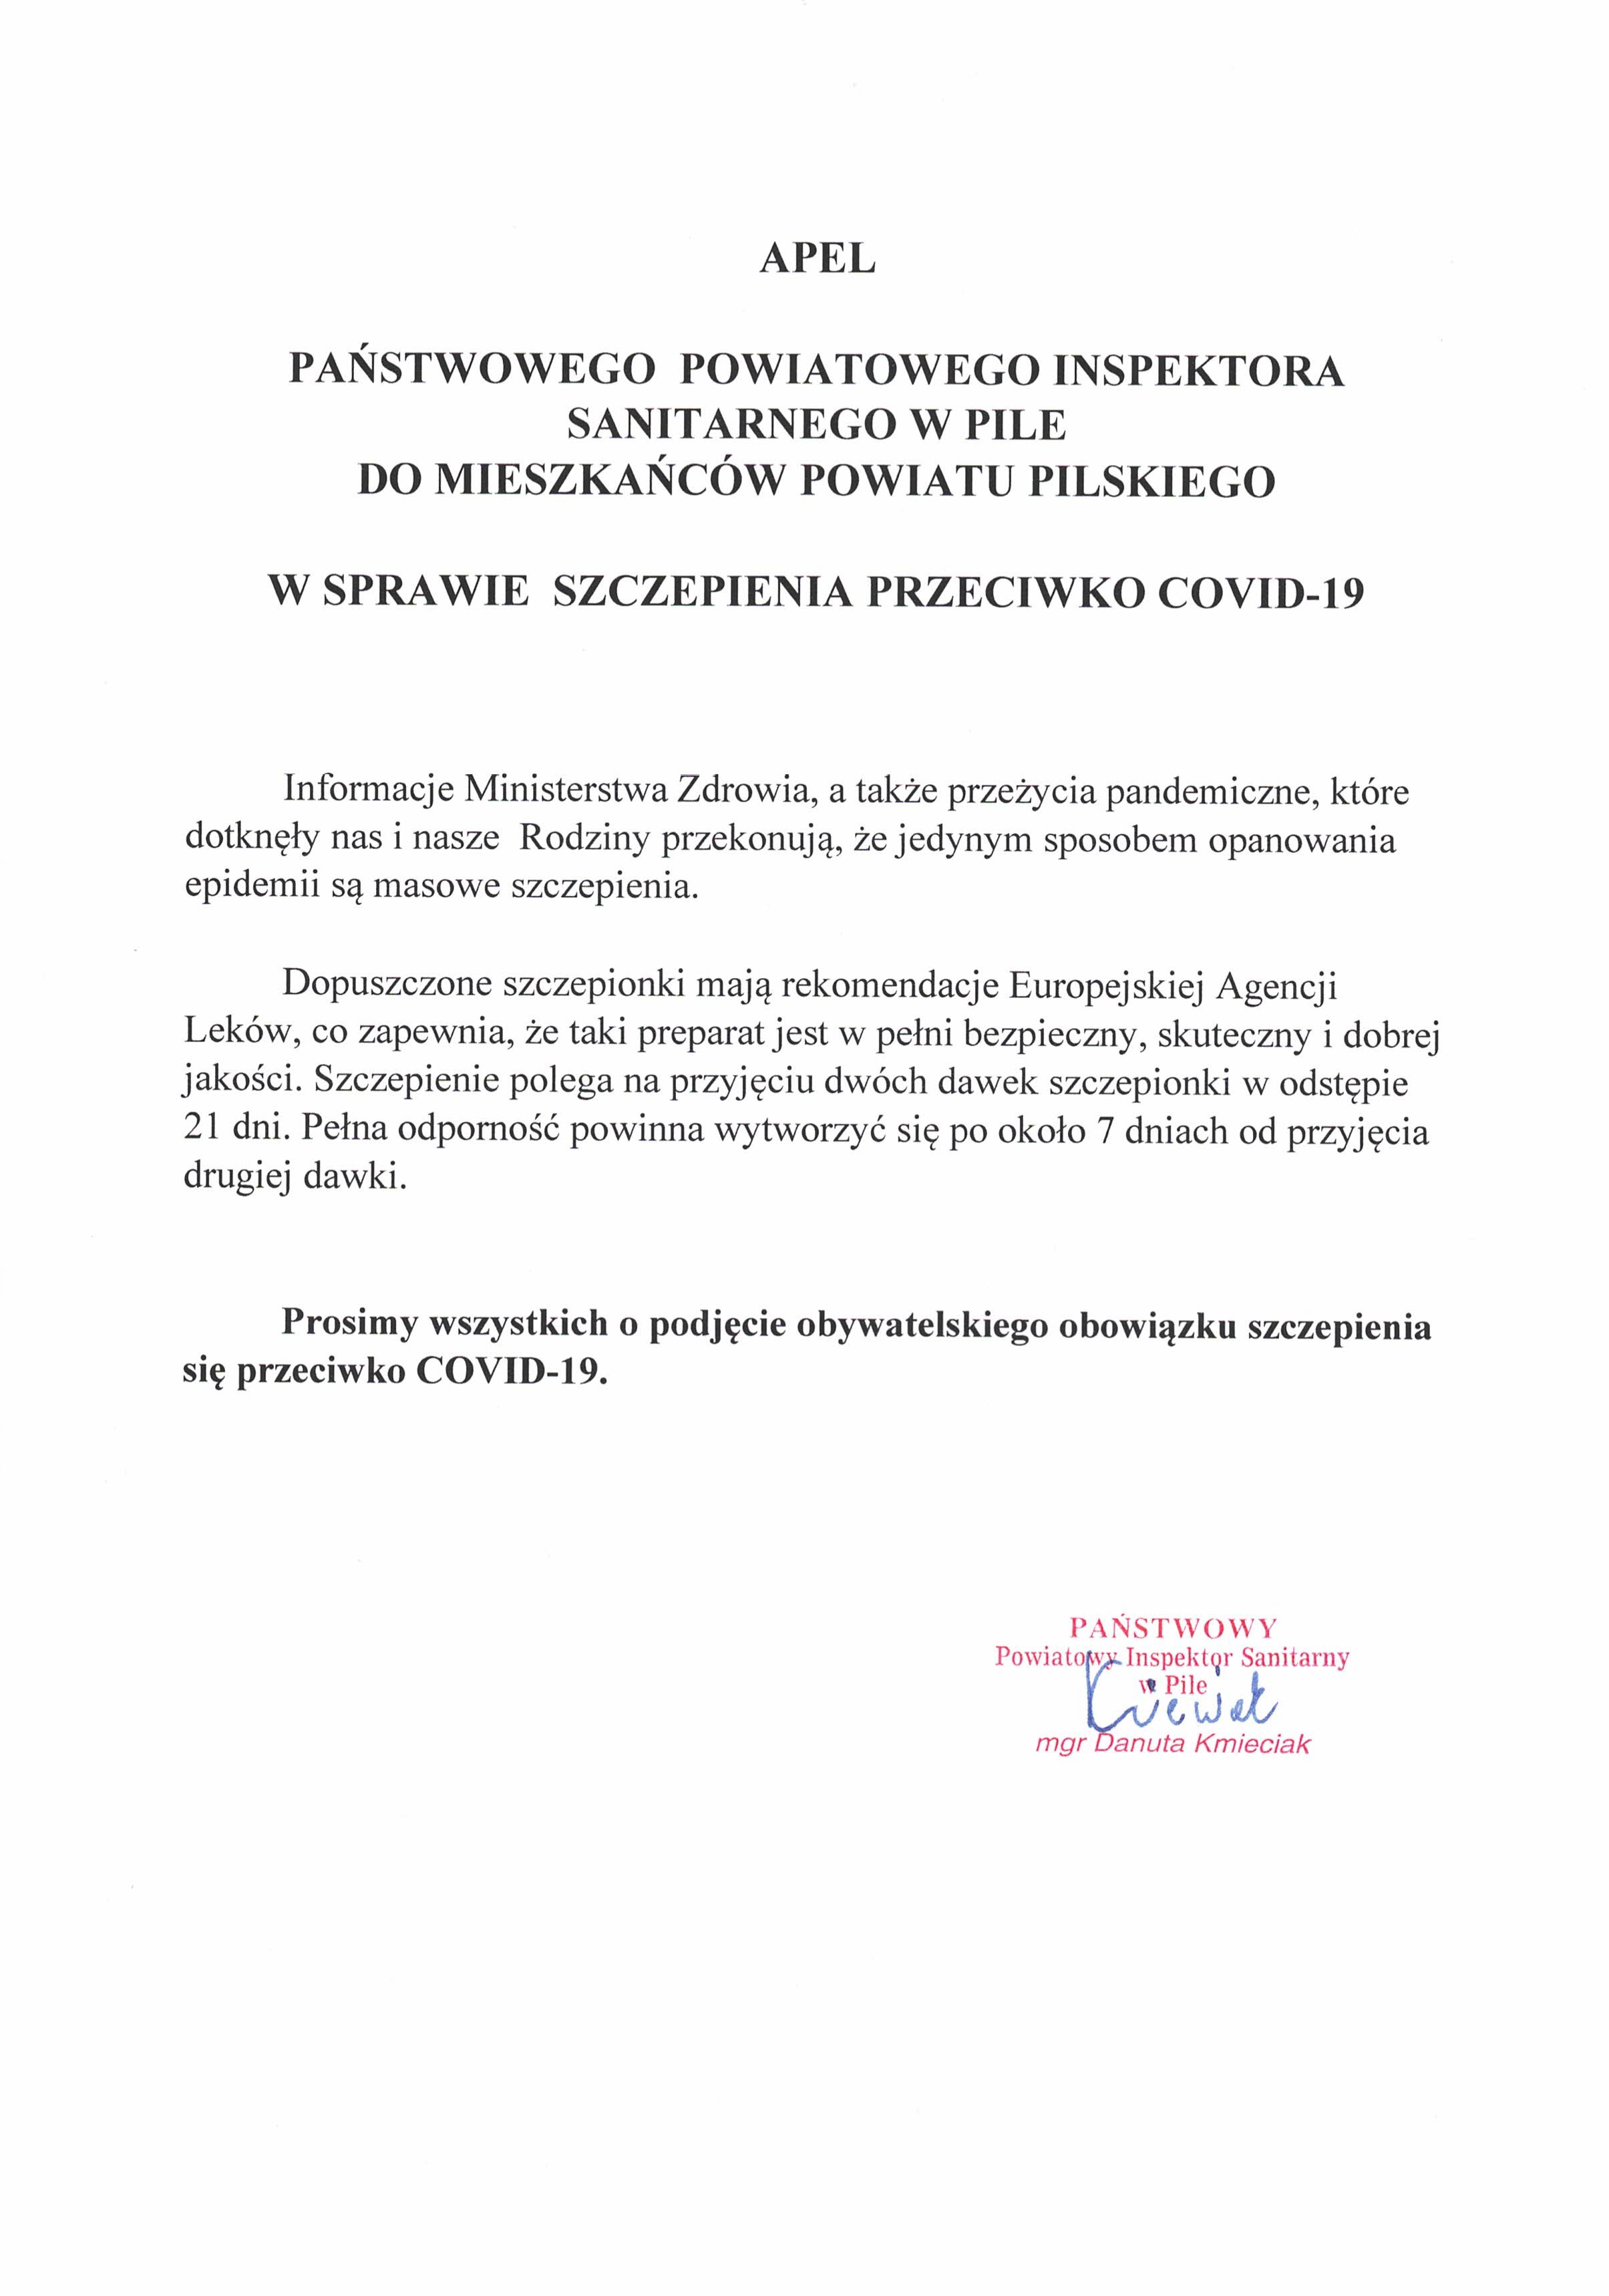 Apel Państwowego Powiatowego Inspektora Sanitarnego w Pile do mieszkańców powiatu pilskiego w sprawie szczepienia przeciwko COVID-19